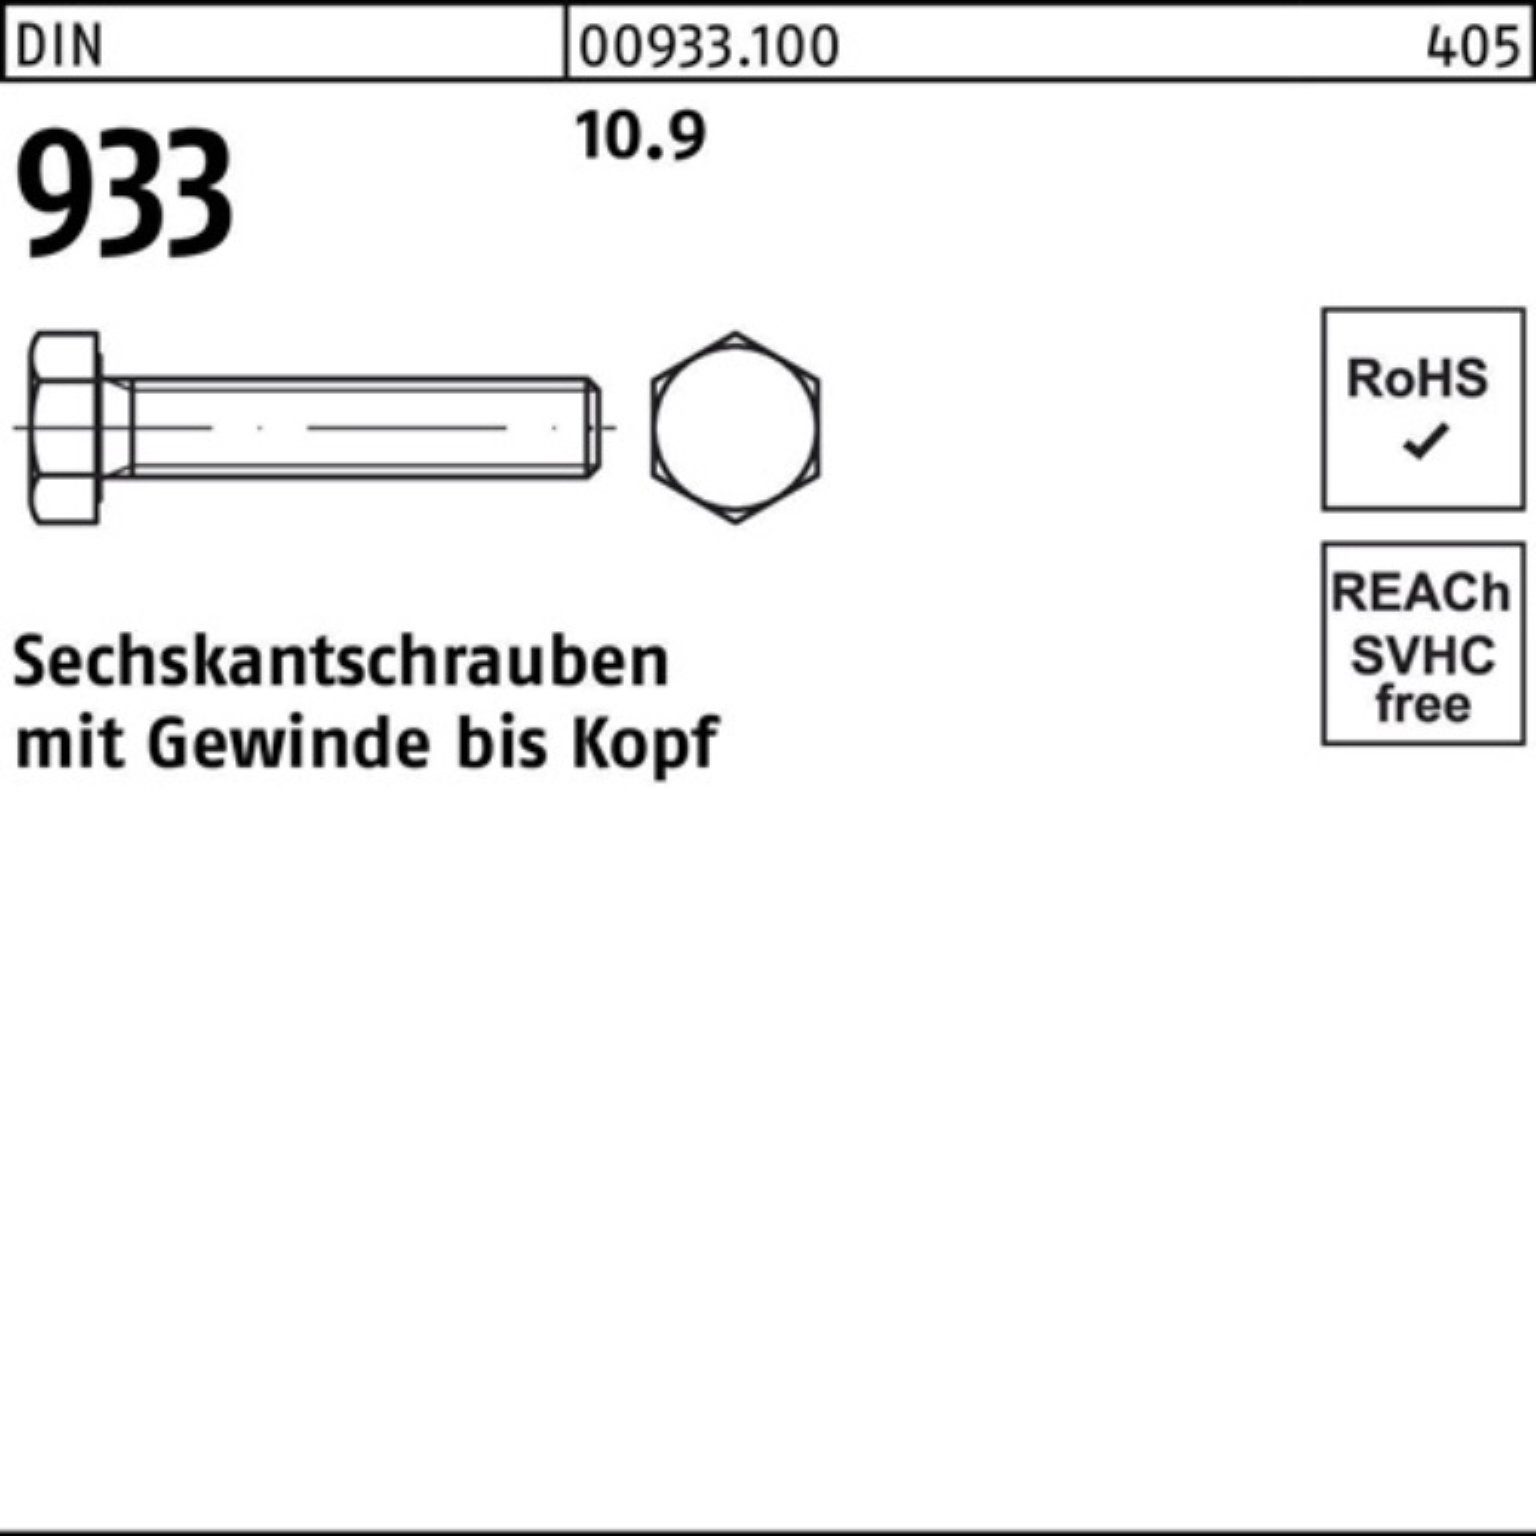 Pack Sechskantschraube Stück 200 M5x 35 Reyher 933 933 DIN Sechskantschraube DIN 10.9 VG 200er